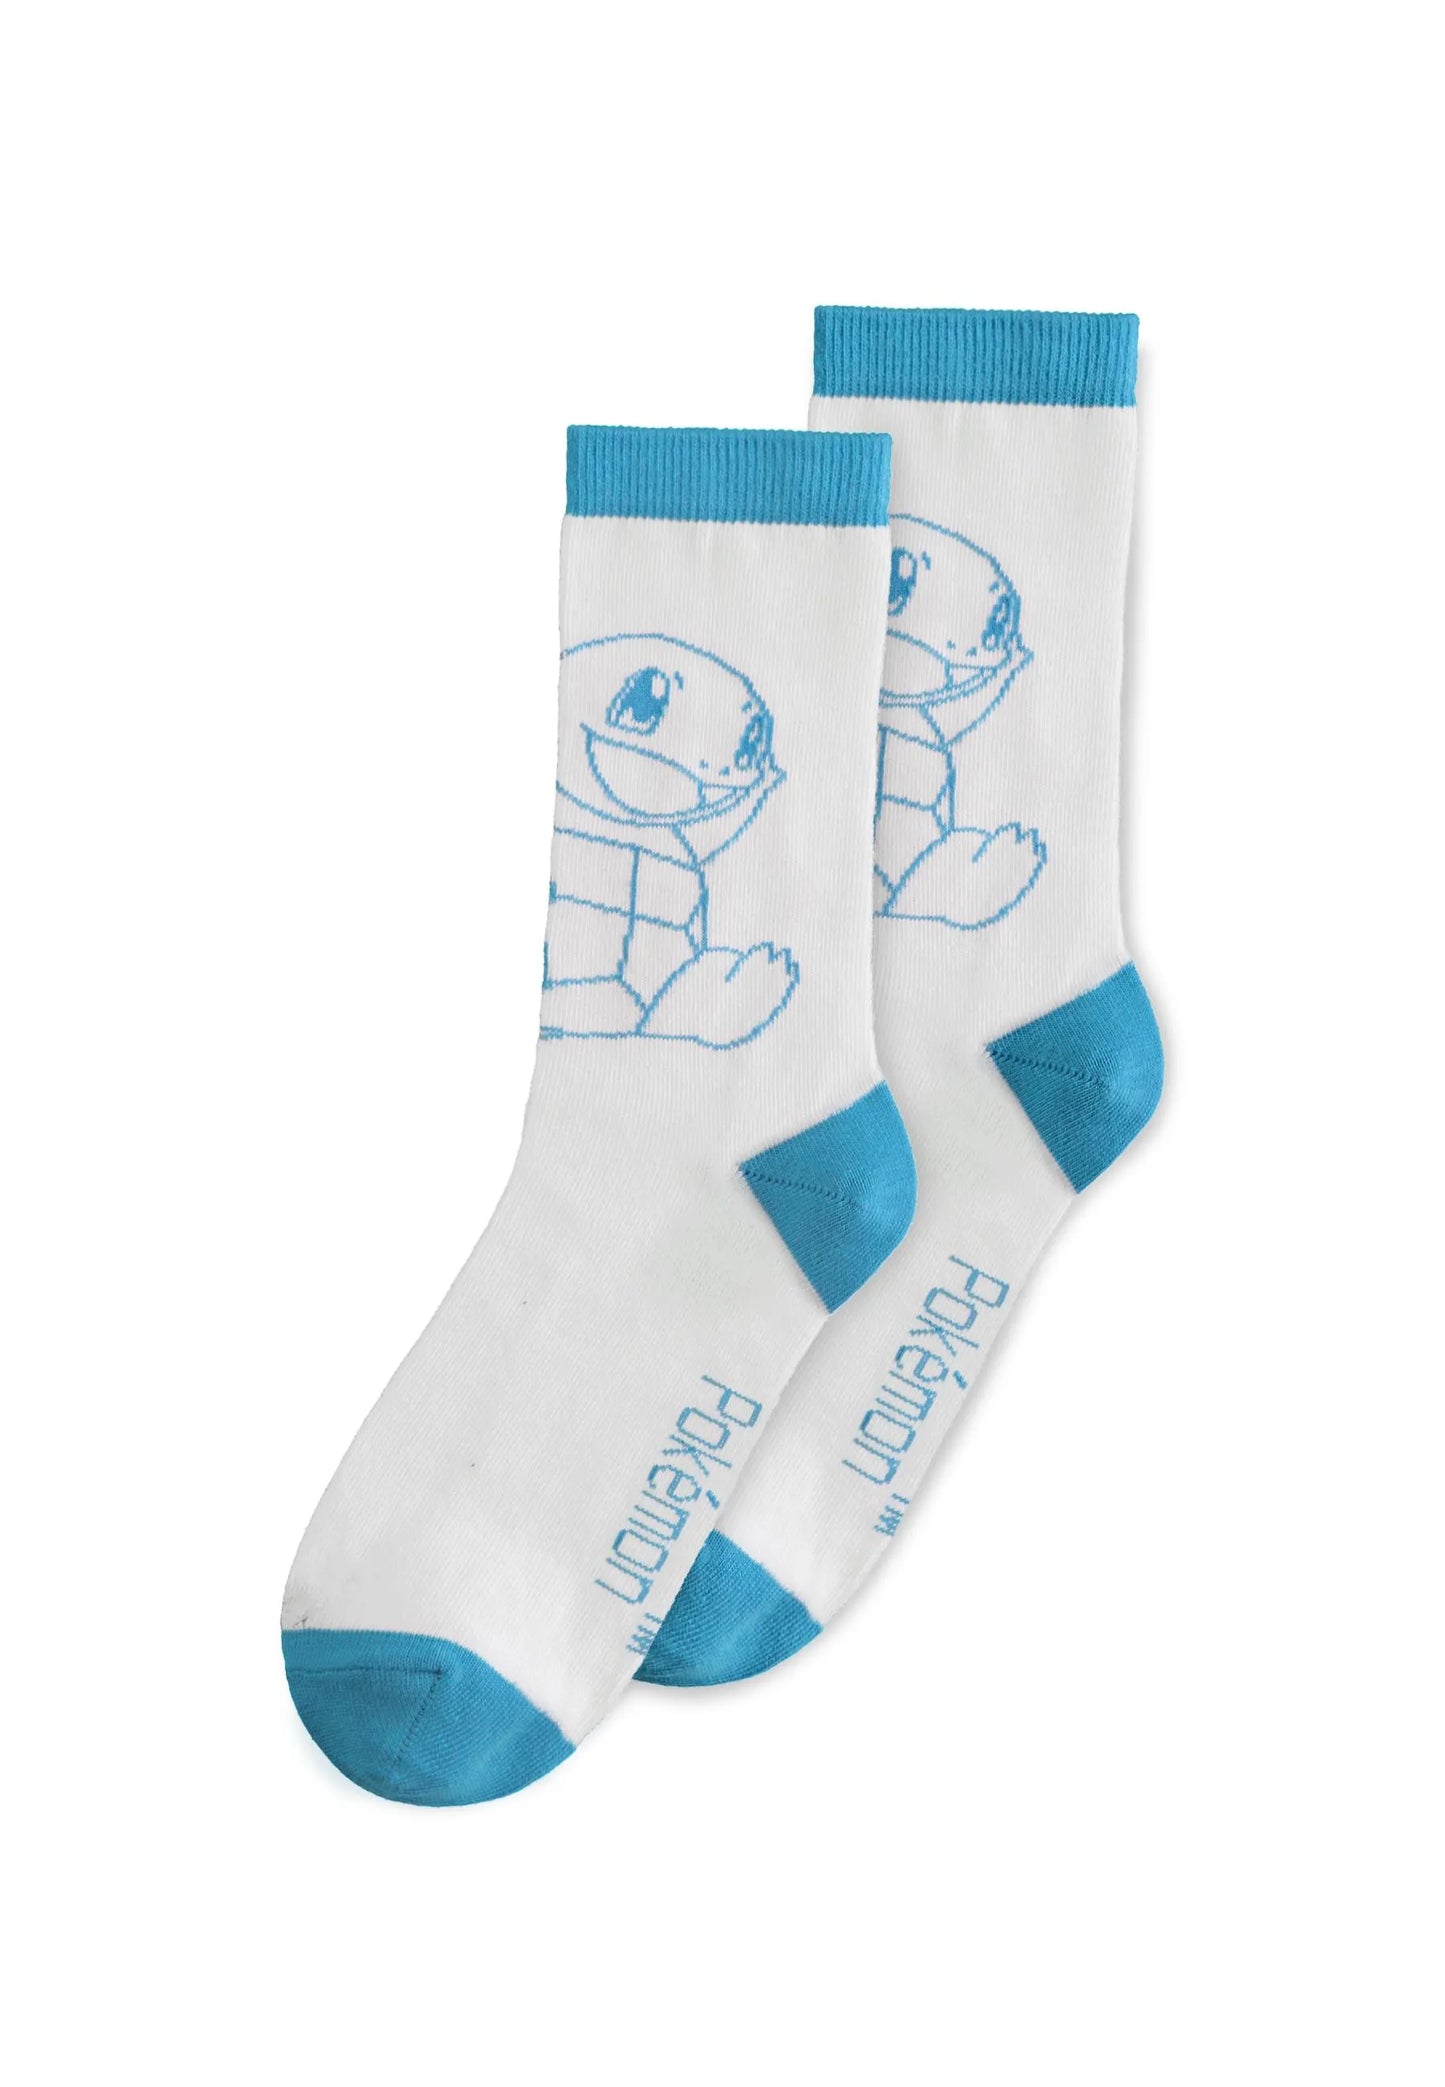 POKEMON - Kanto Starters Socks 3-Pack